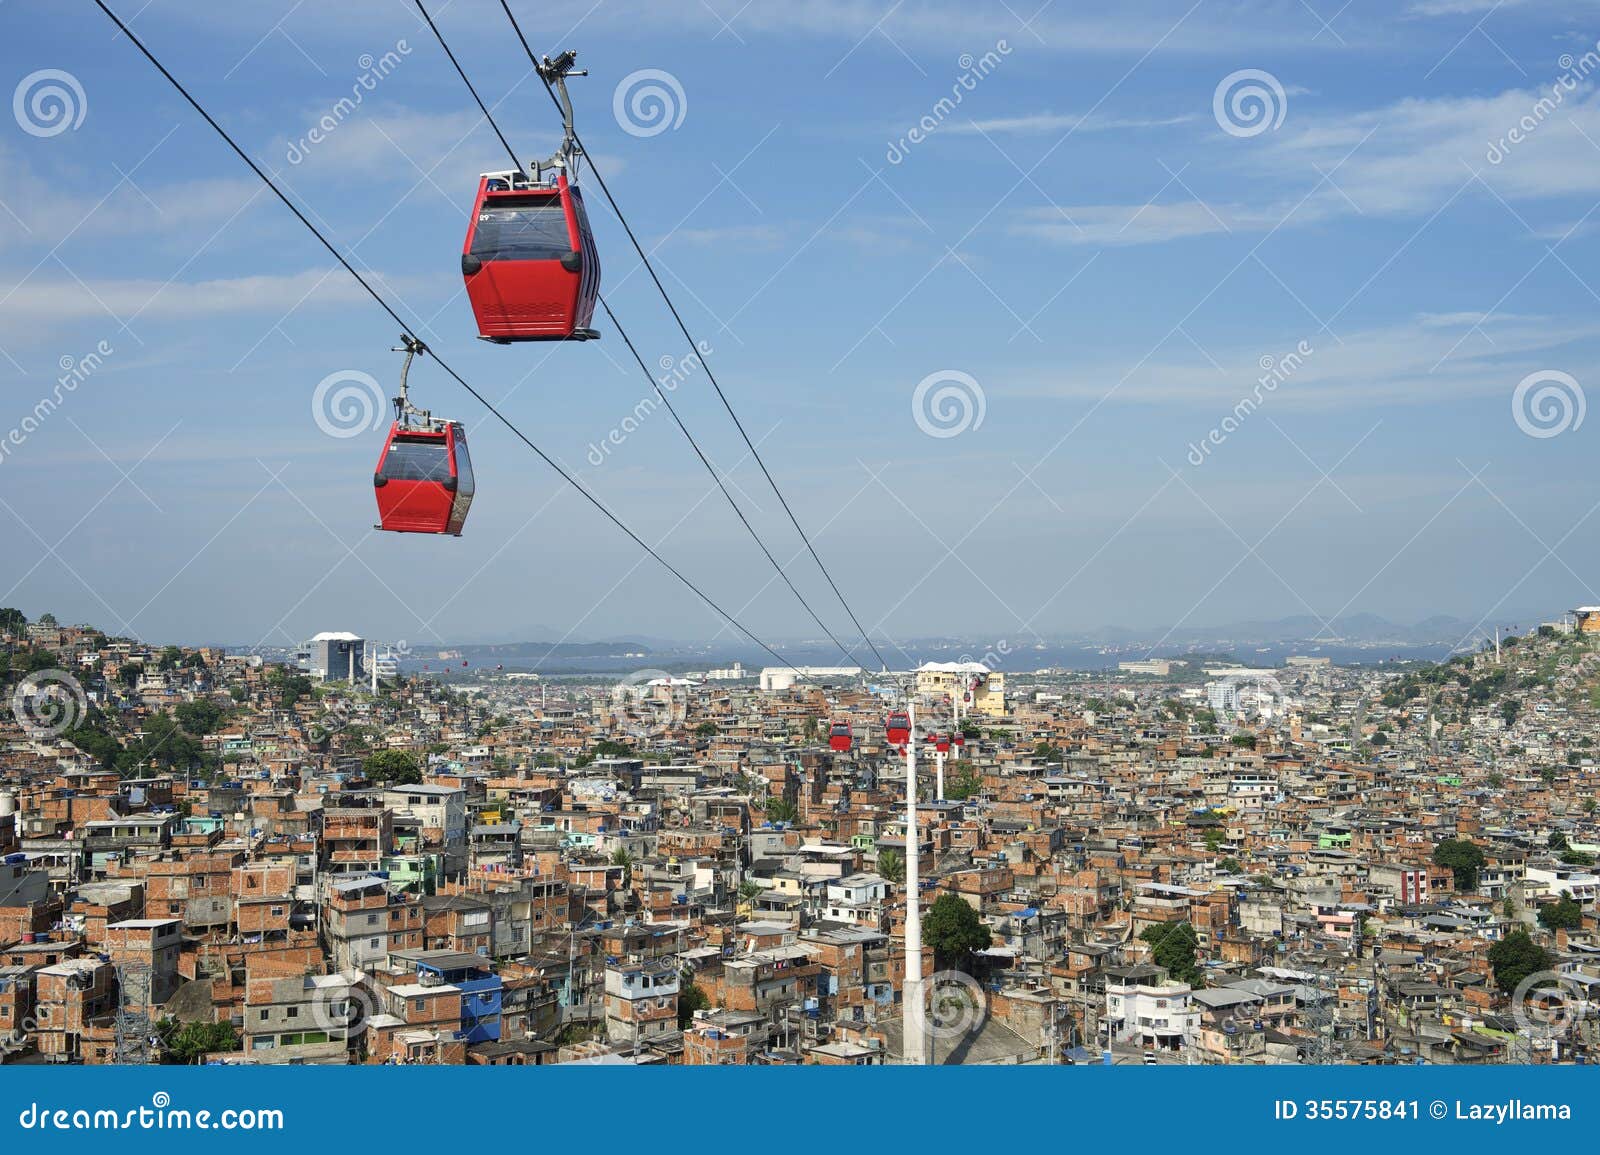 rio de janeiro favela with red cable cars